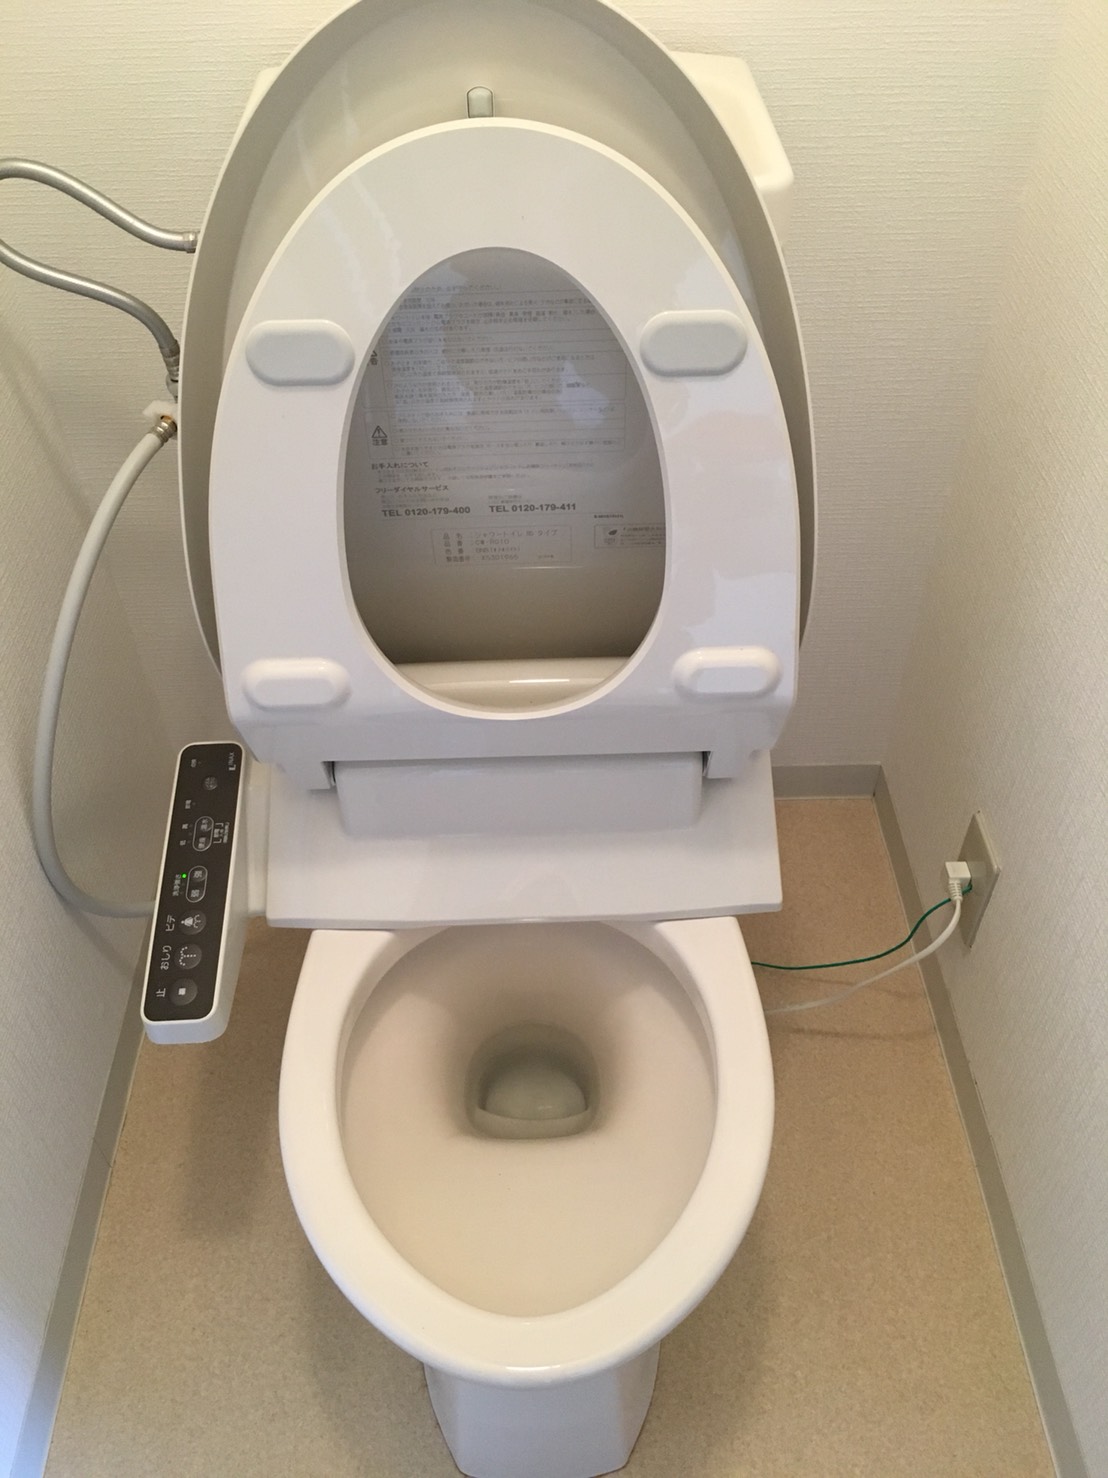 トイレクリーニング  トイレの汚れプロにお任せください~おそうじプラスでは、伊丹市・宝塚市・川西市の地域よりお見積はもちろん出張料も無料で対応しております。